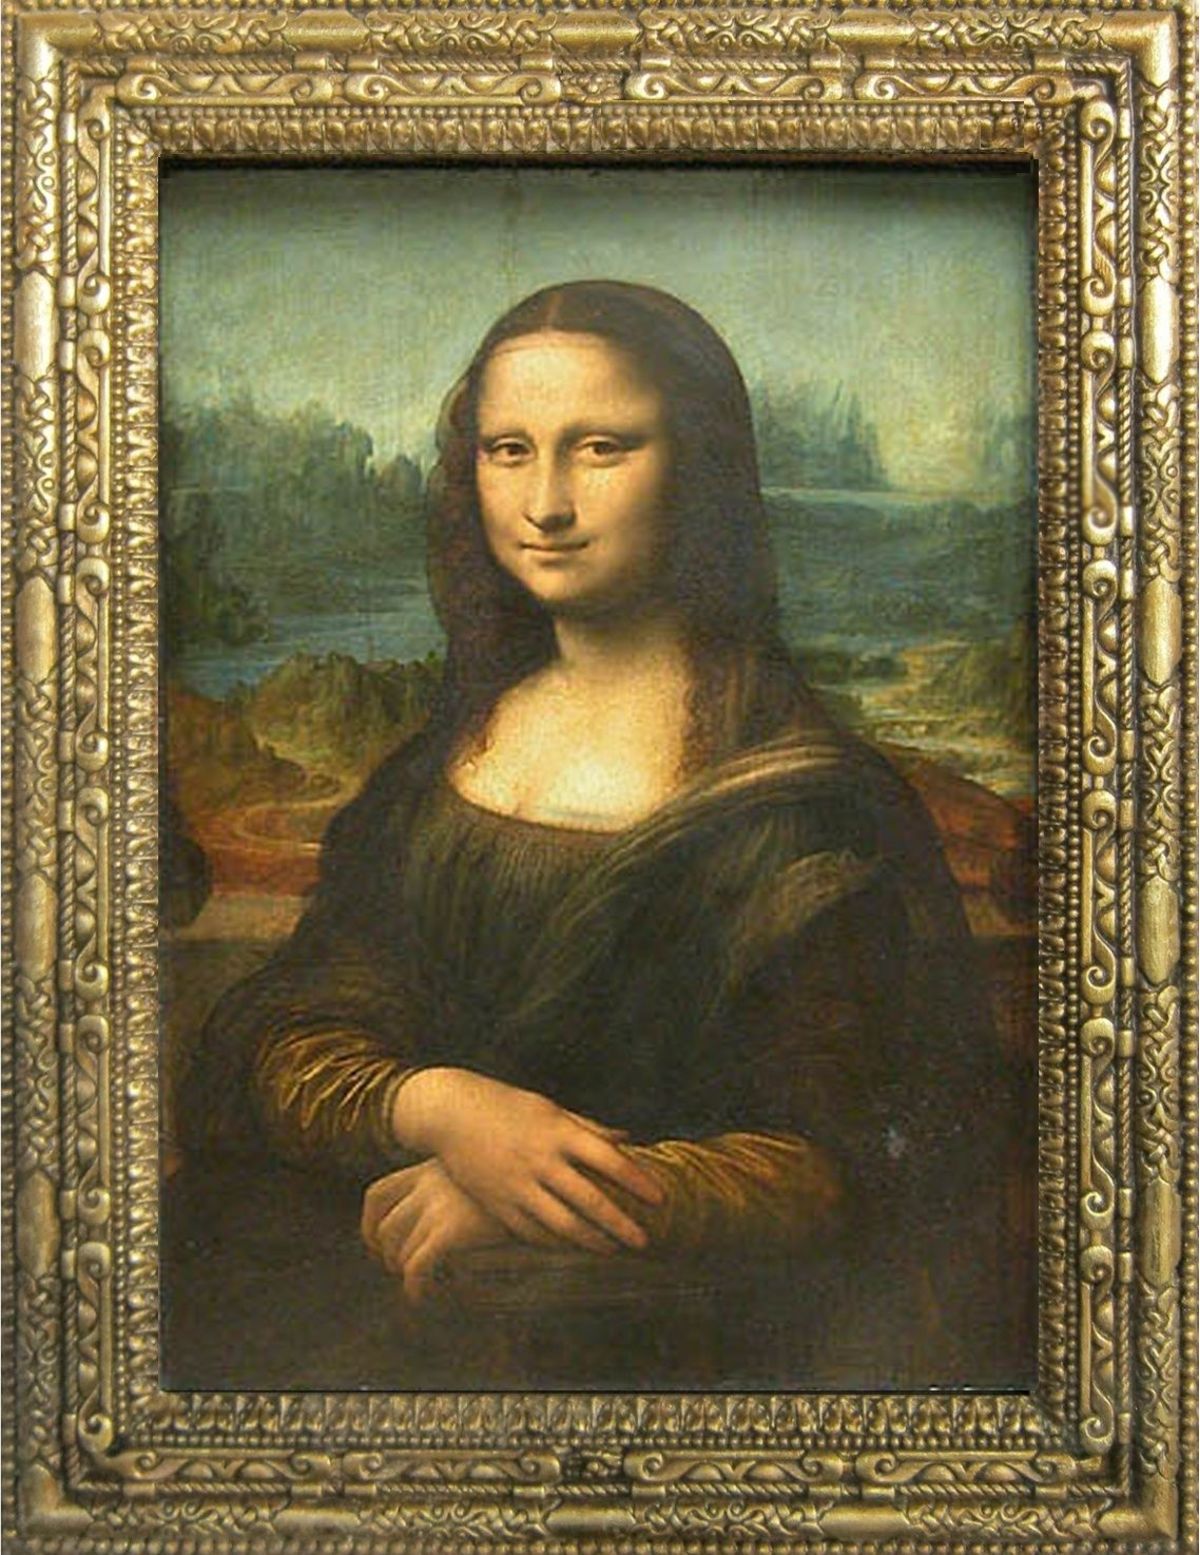 Bạn đã bao giờ tò mò về bí mật của Mona Lisa và cách vẽ bức tranh nổi tiếng này chưa? Cùng khám phá những điều thú vị và đầy sáng tạo trong quá trình vẽ bức tranh với tác phẩm nghệ thuật gây ấn tượng này.